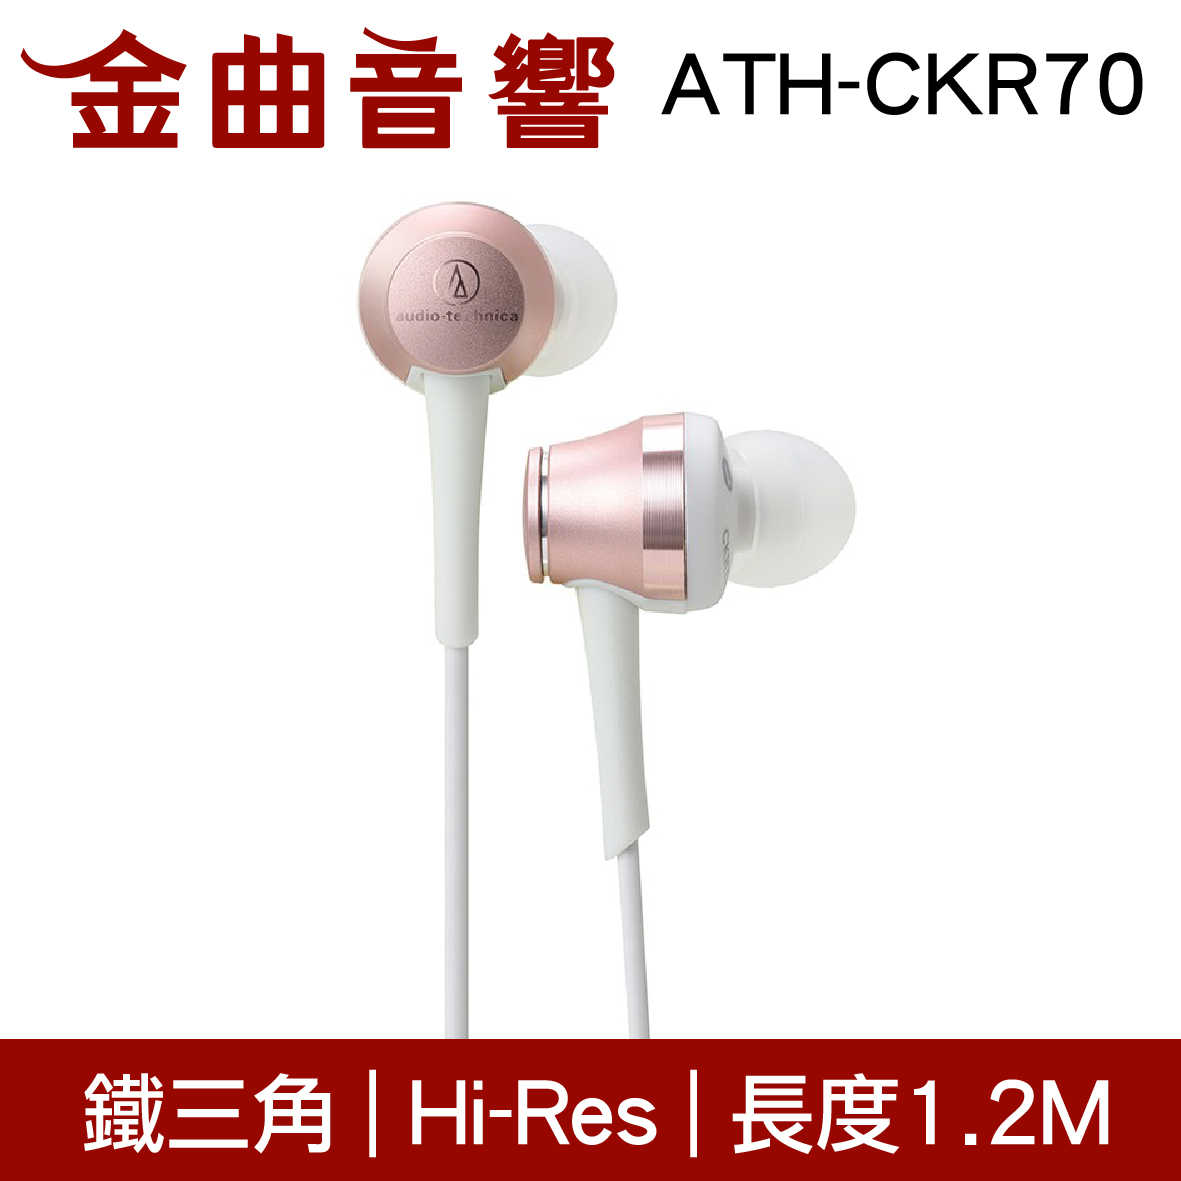 鐵三角 ATH-CKR70 玫瑰金 耳道式耳機 | 金曲音響